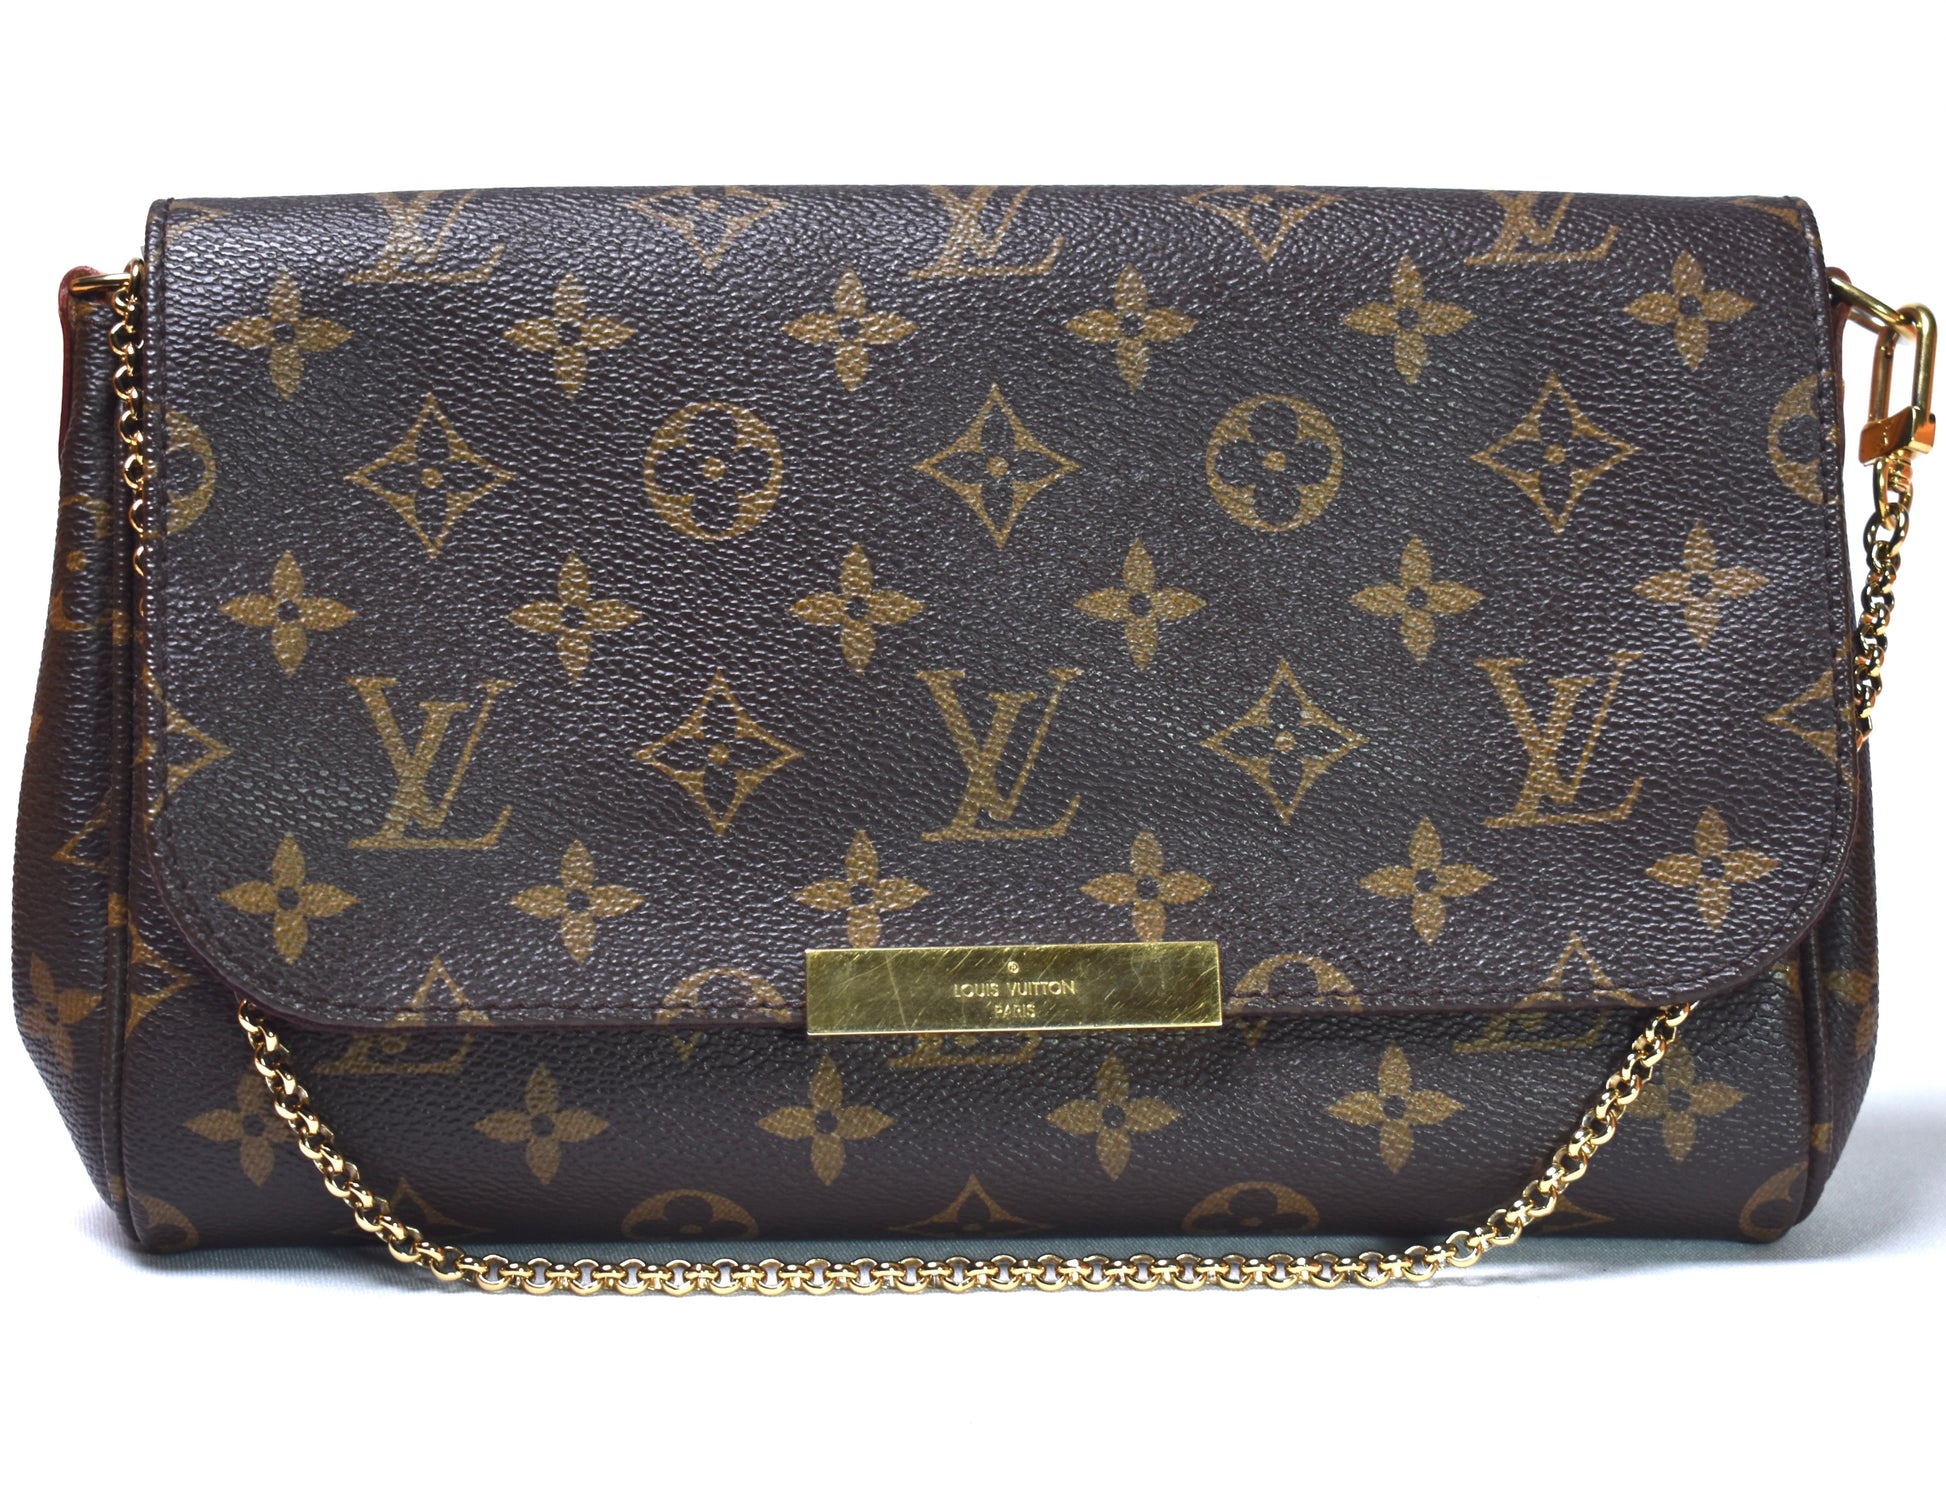 Louis Vuitton Monogram Canvas Messenger Bag on SALE